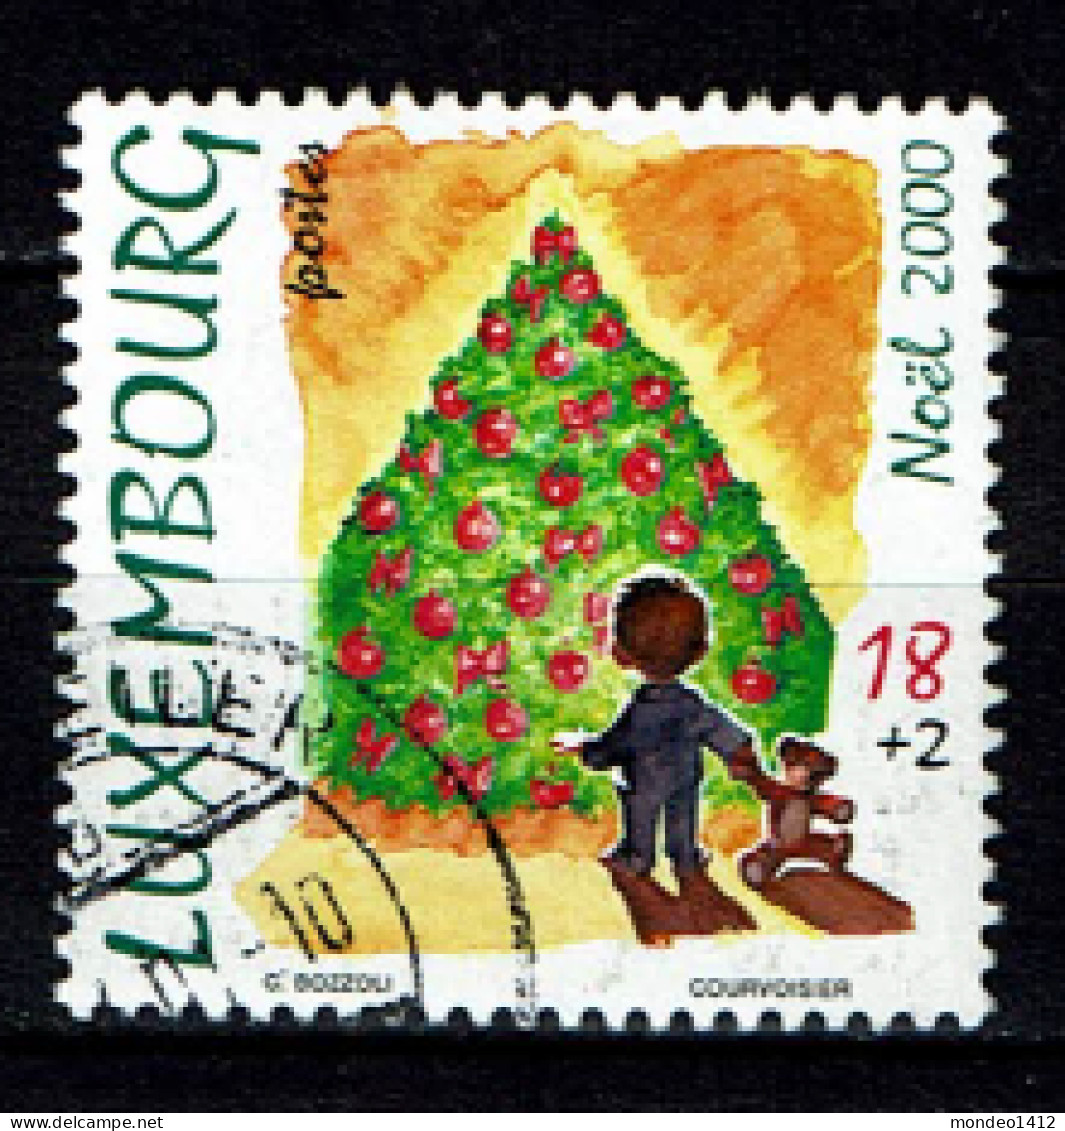 Luxembourg 2000 - YT 1467 - Noël, Sapin Décoré, Merry Christmas - Gebruikt